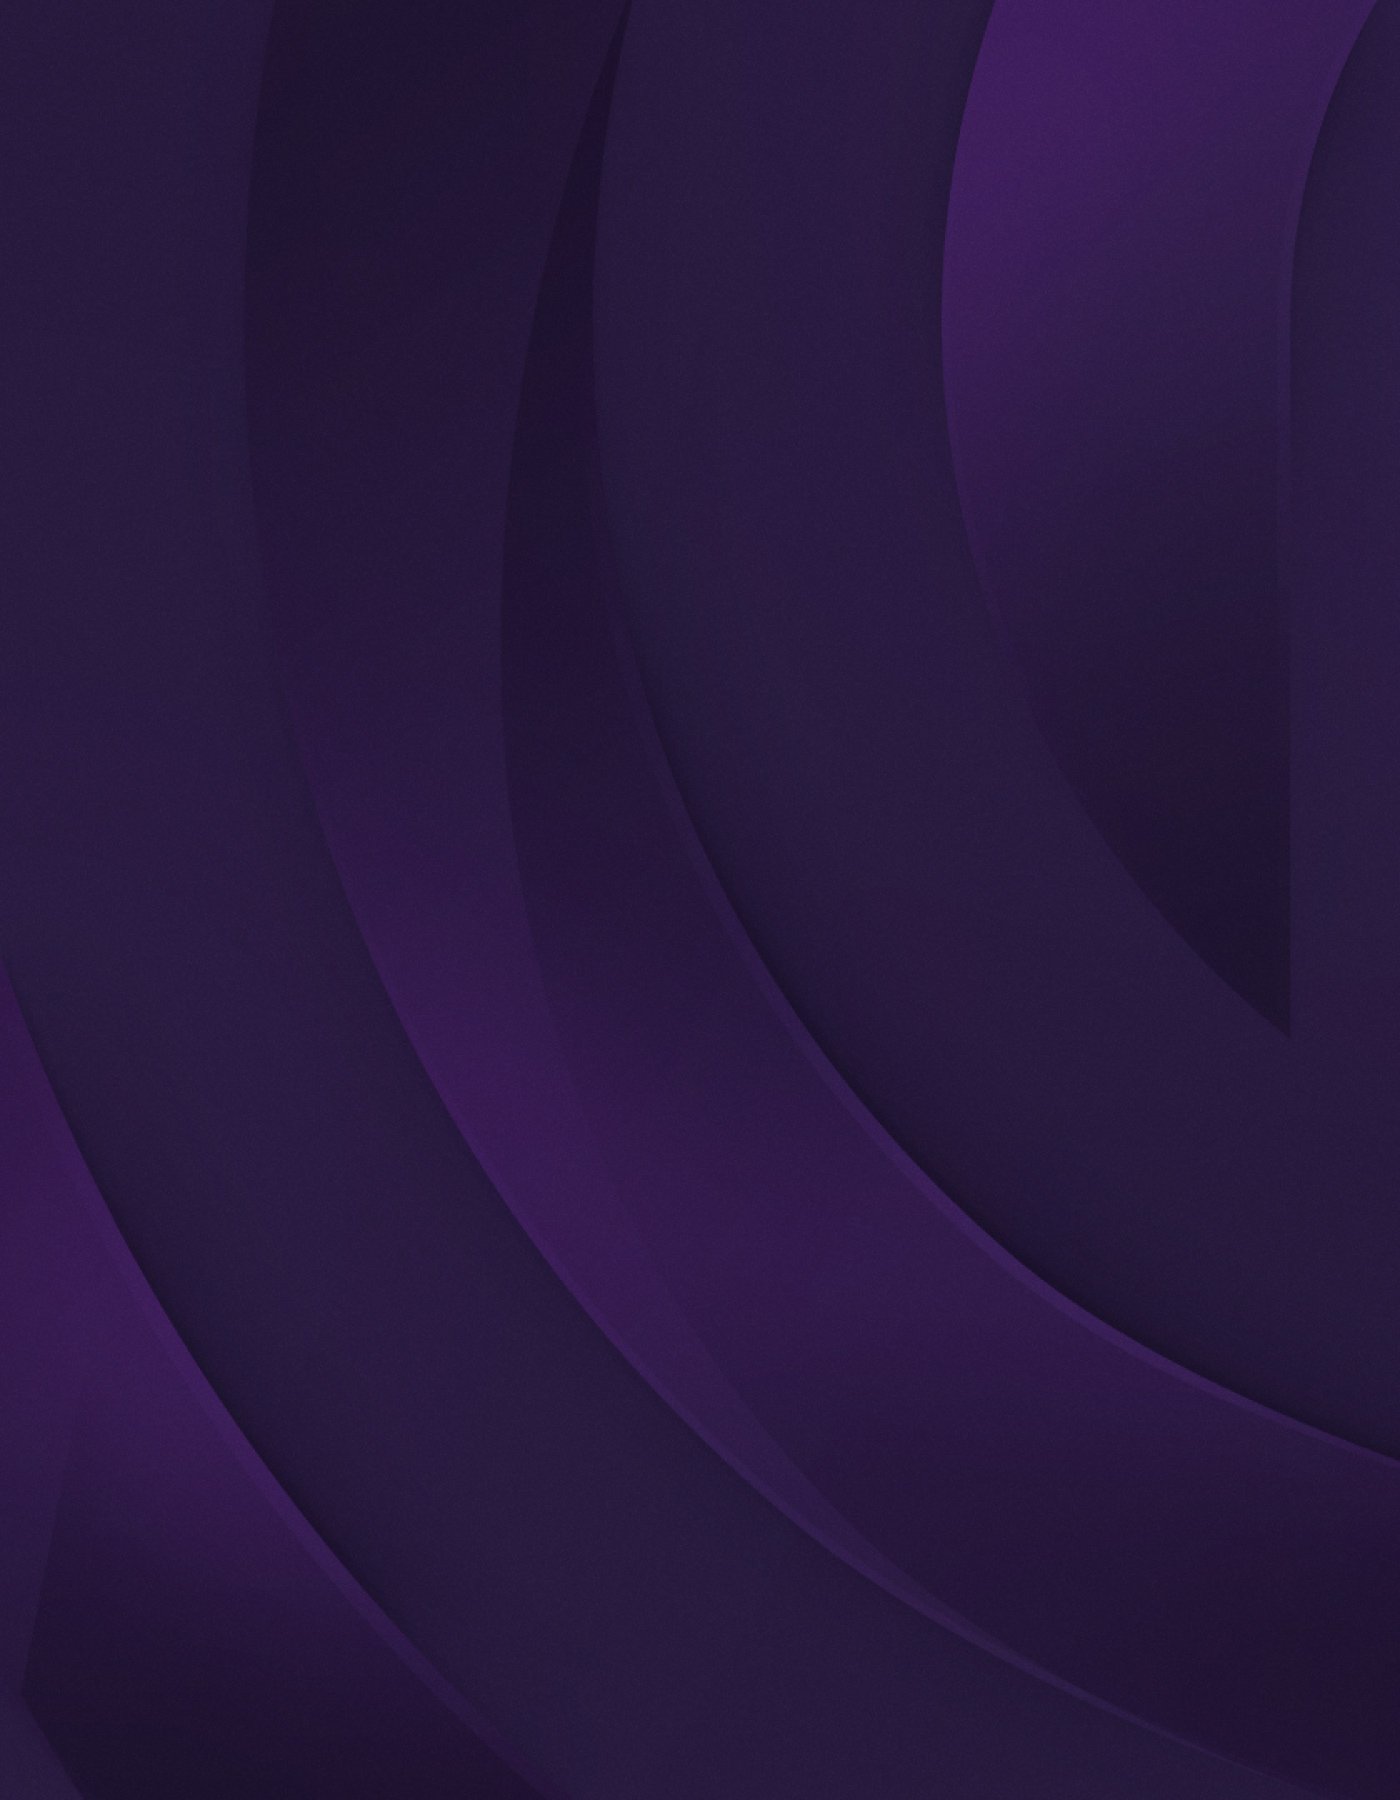 Illustration en violet